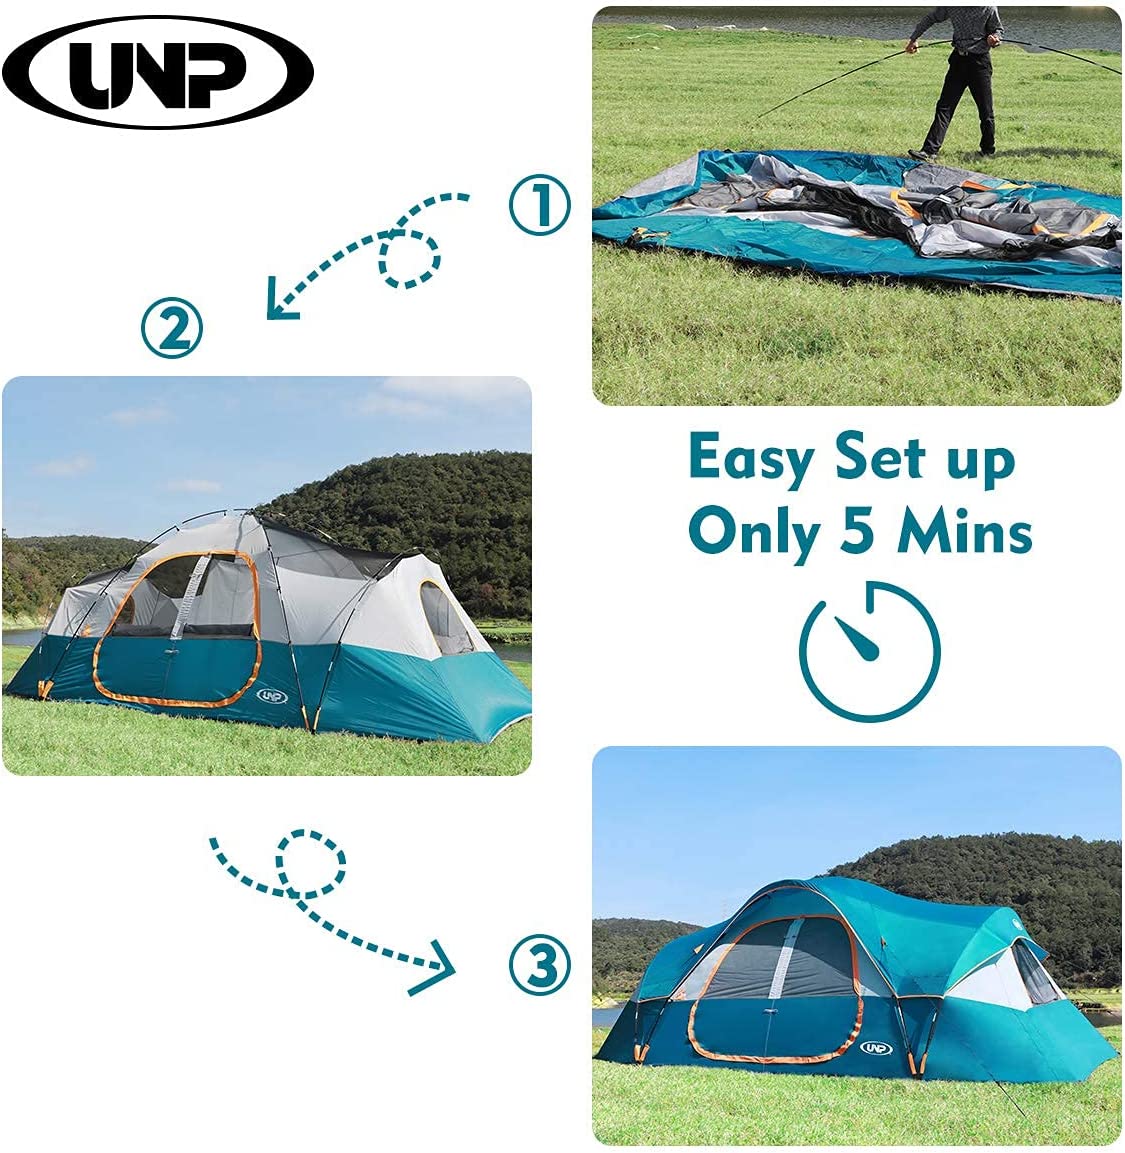 چادر کمپینگ 10 نفره UNP Camping Tent 10-Person - ارسال 15 الی 20 روز کاری